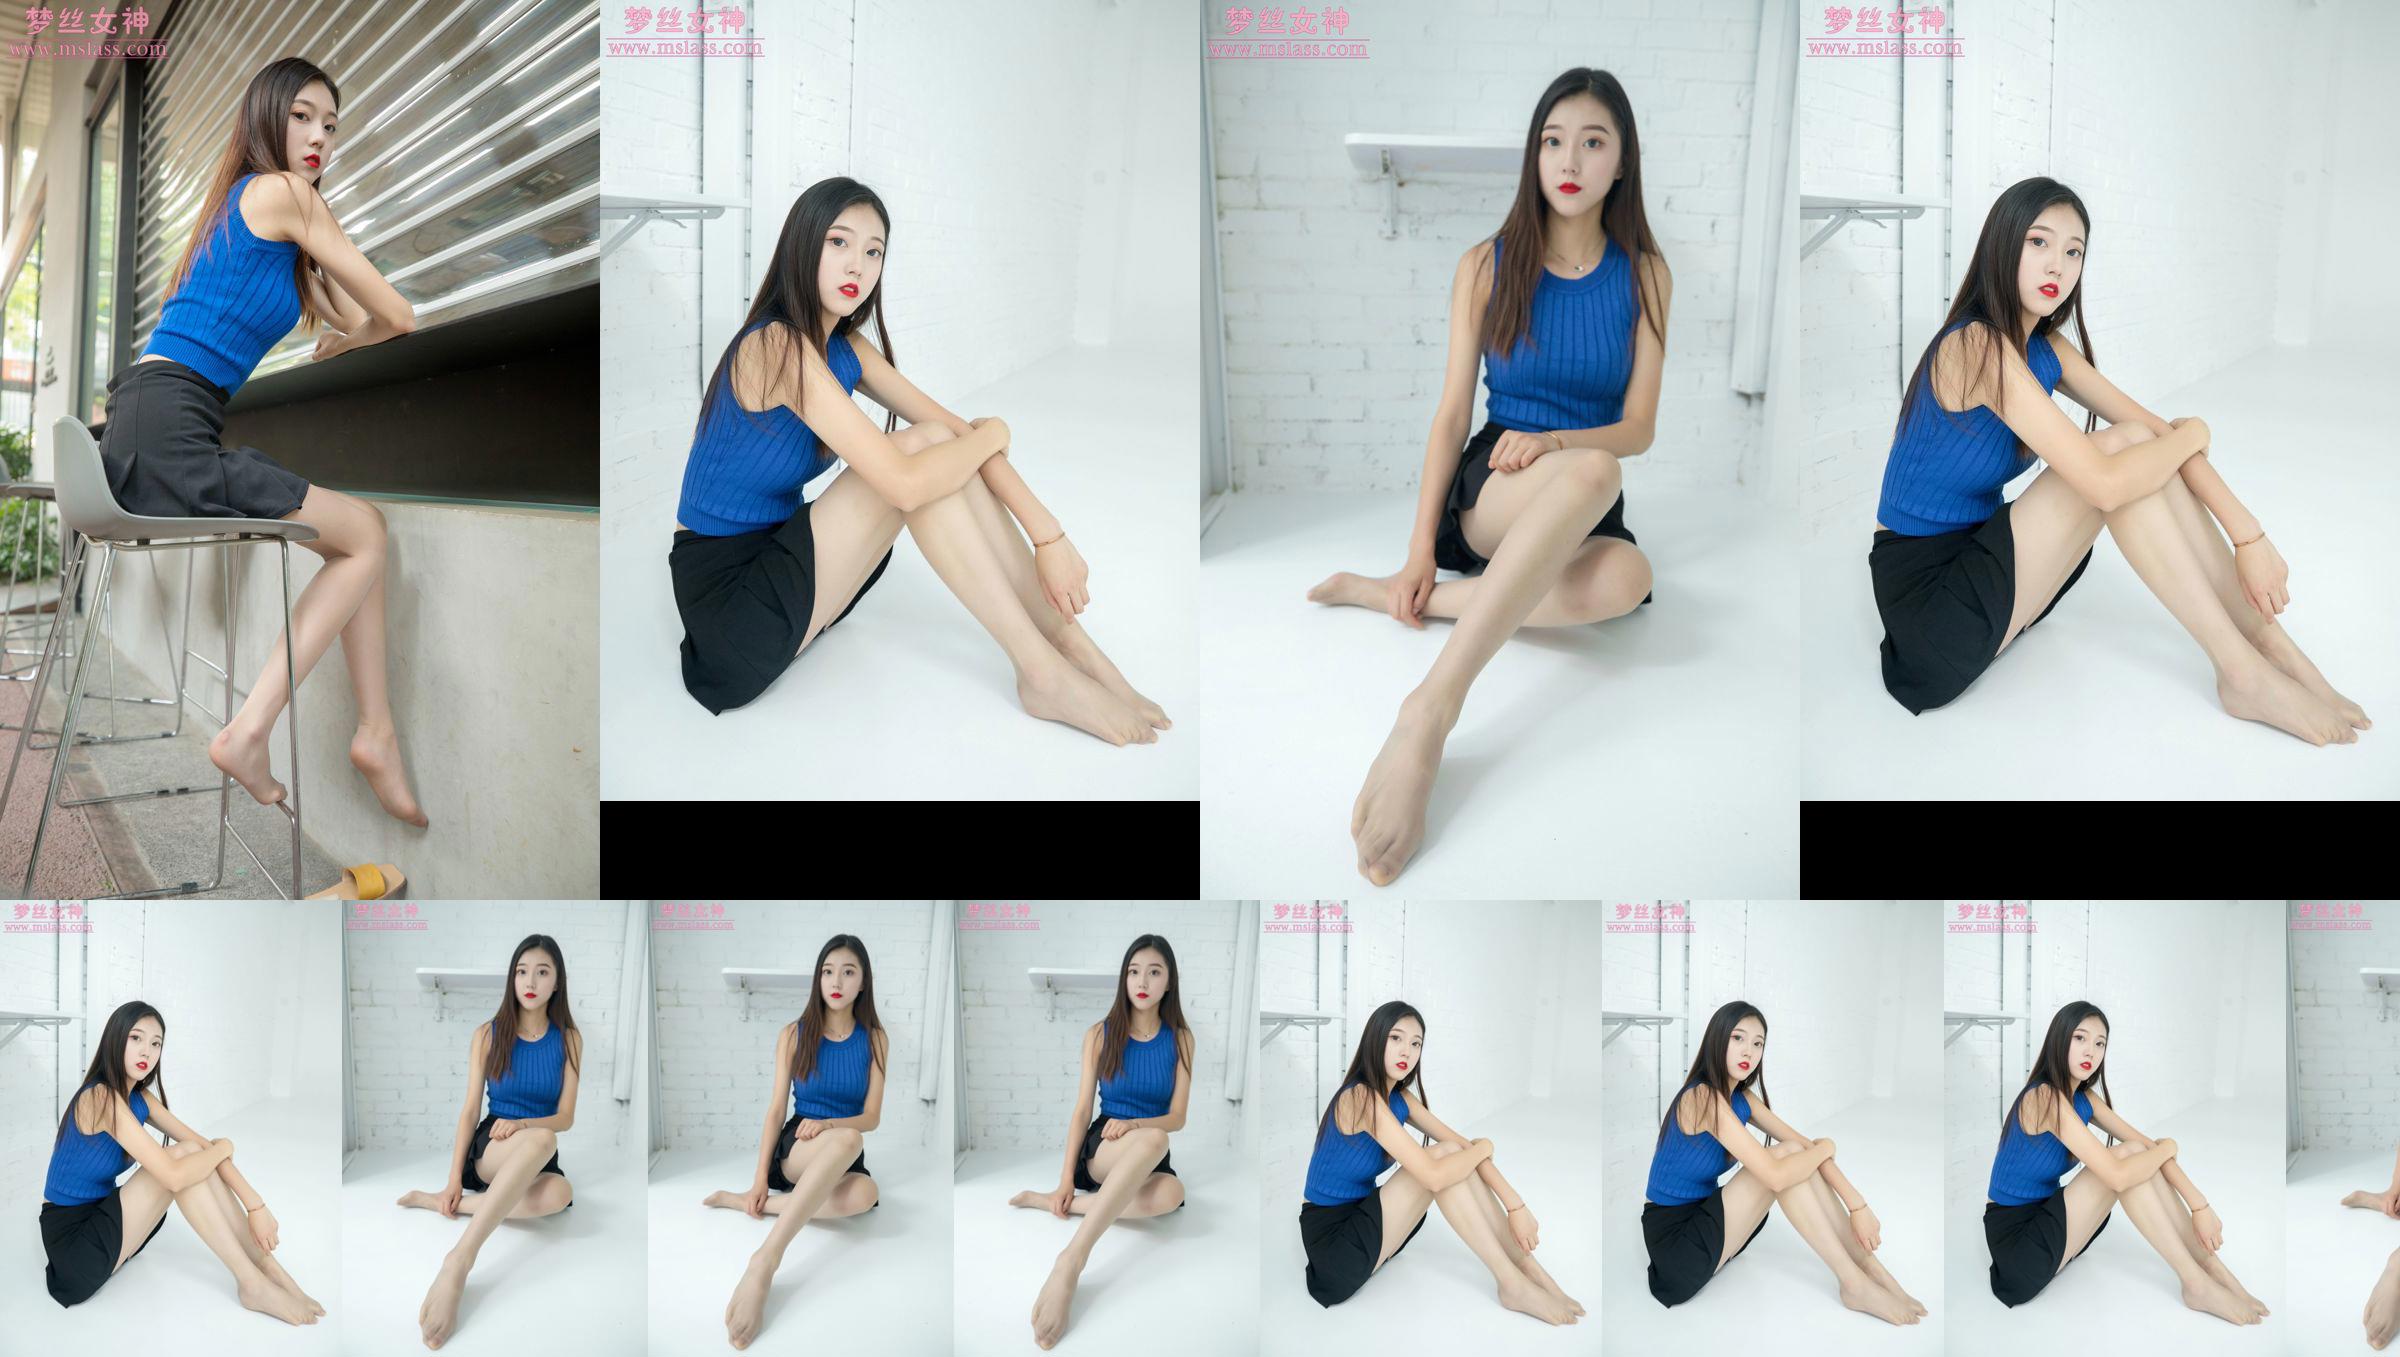 [MSLASS] Shu Lei Art Space Stockings Beautiful Legs No.5a0646 Trang 2